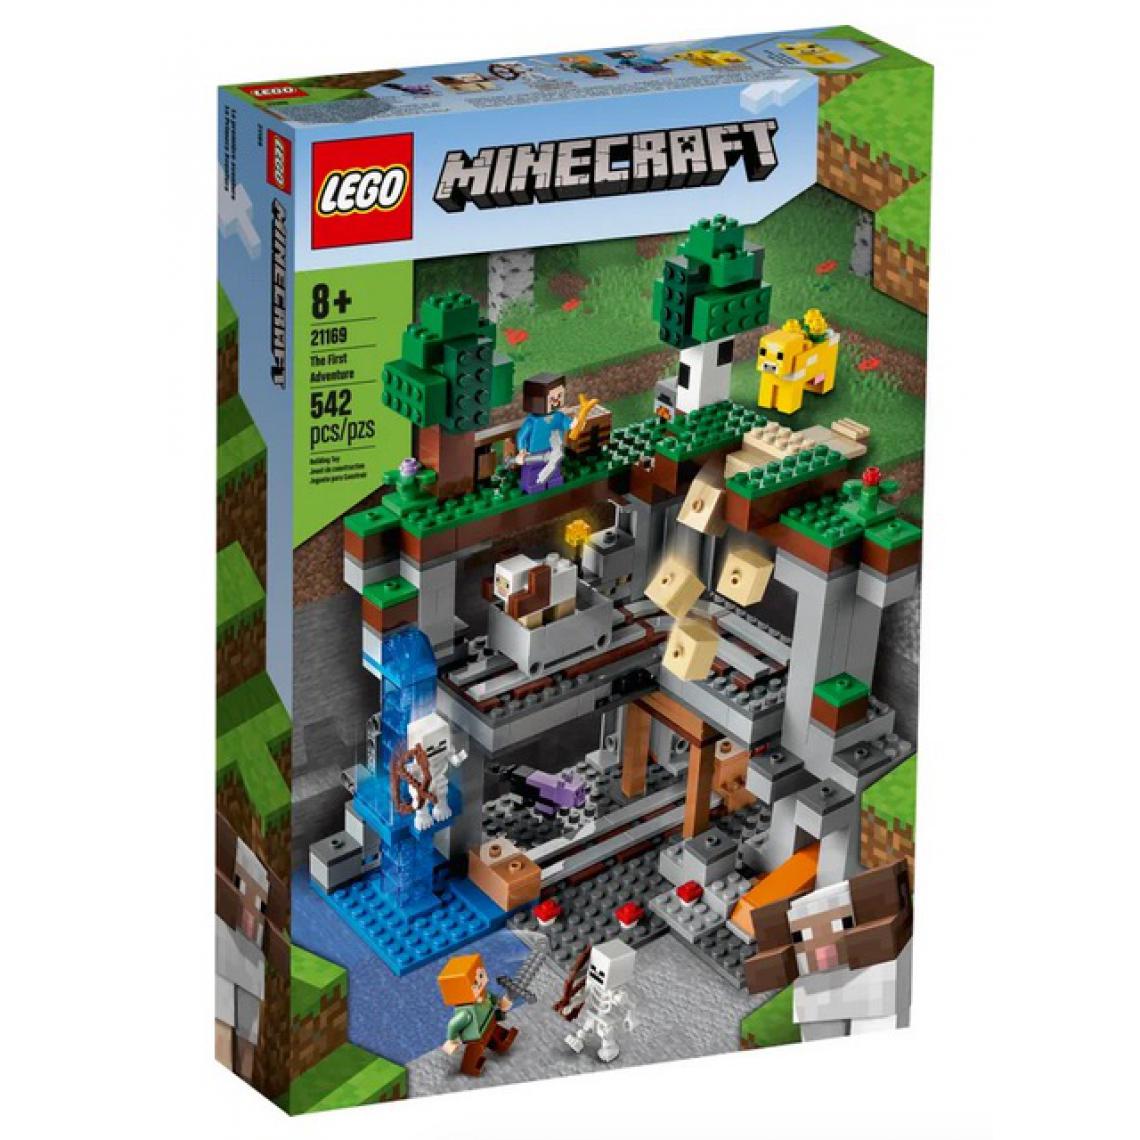 Lego - LEGO 21169 Minecraft™ La Premiere Aventure Jeu du Nether avec Steve, Alex, le Squelette, le Chat Mort, Moobloom - Briques Lego